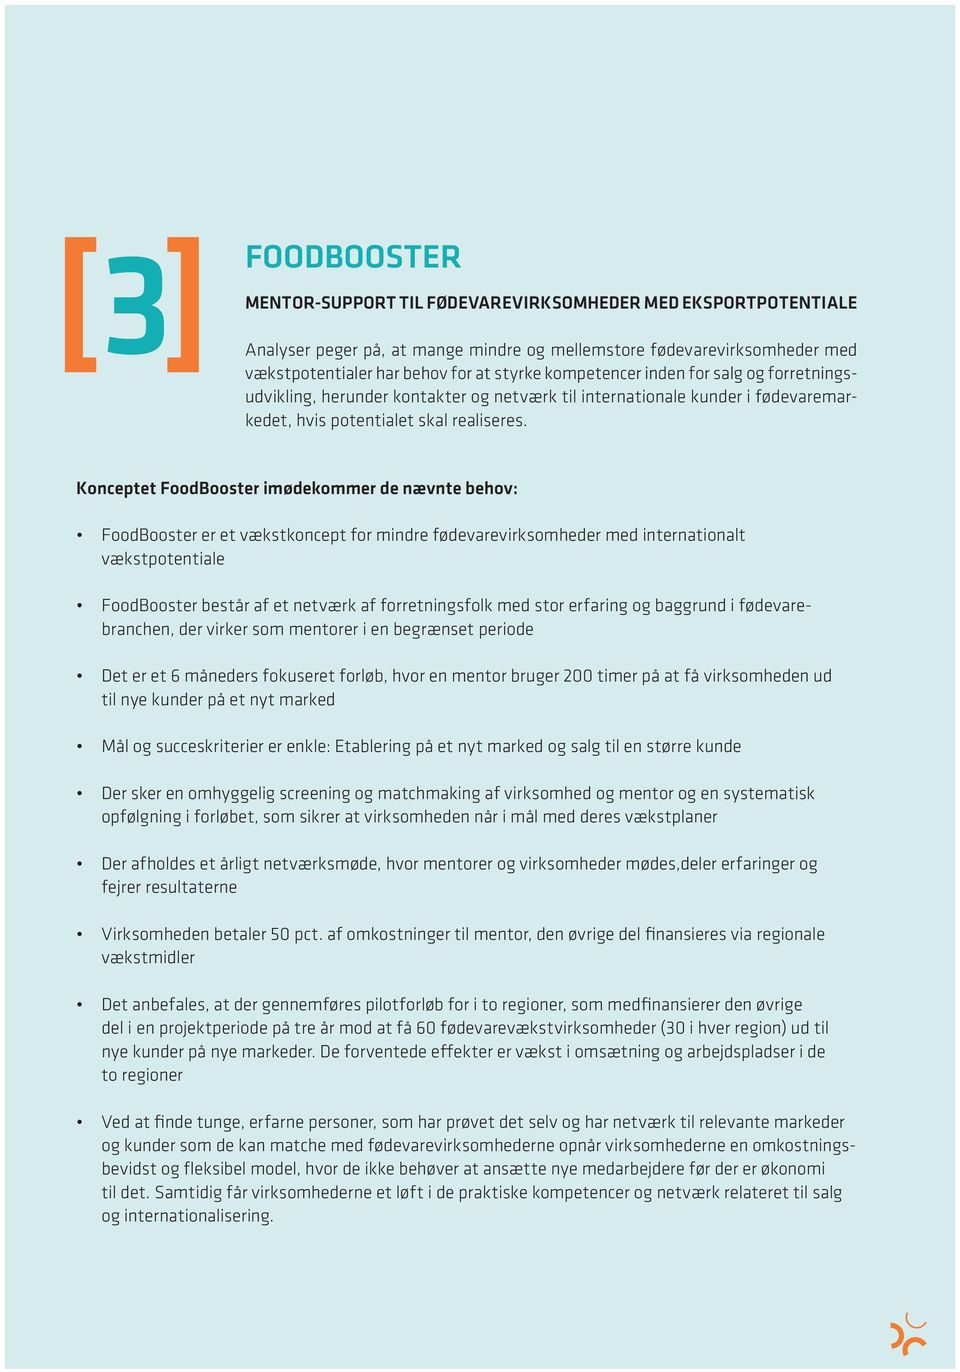 Konceptet FoodBooster imødekommer de nævnte behov: FoodBooster er et vækstkoncept for mindre fødevarevirksomheder med internationalt vækstpotentiale FoodBooster består af et netværk af